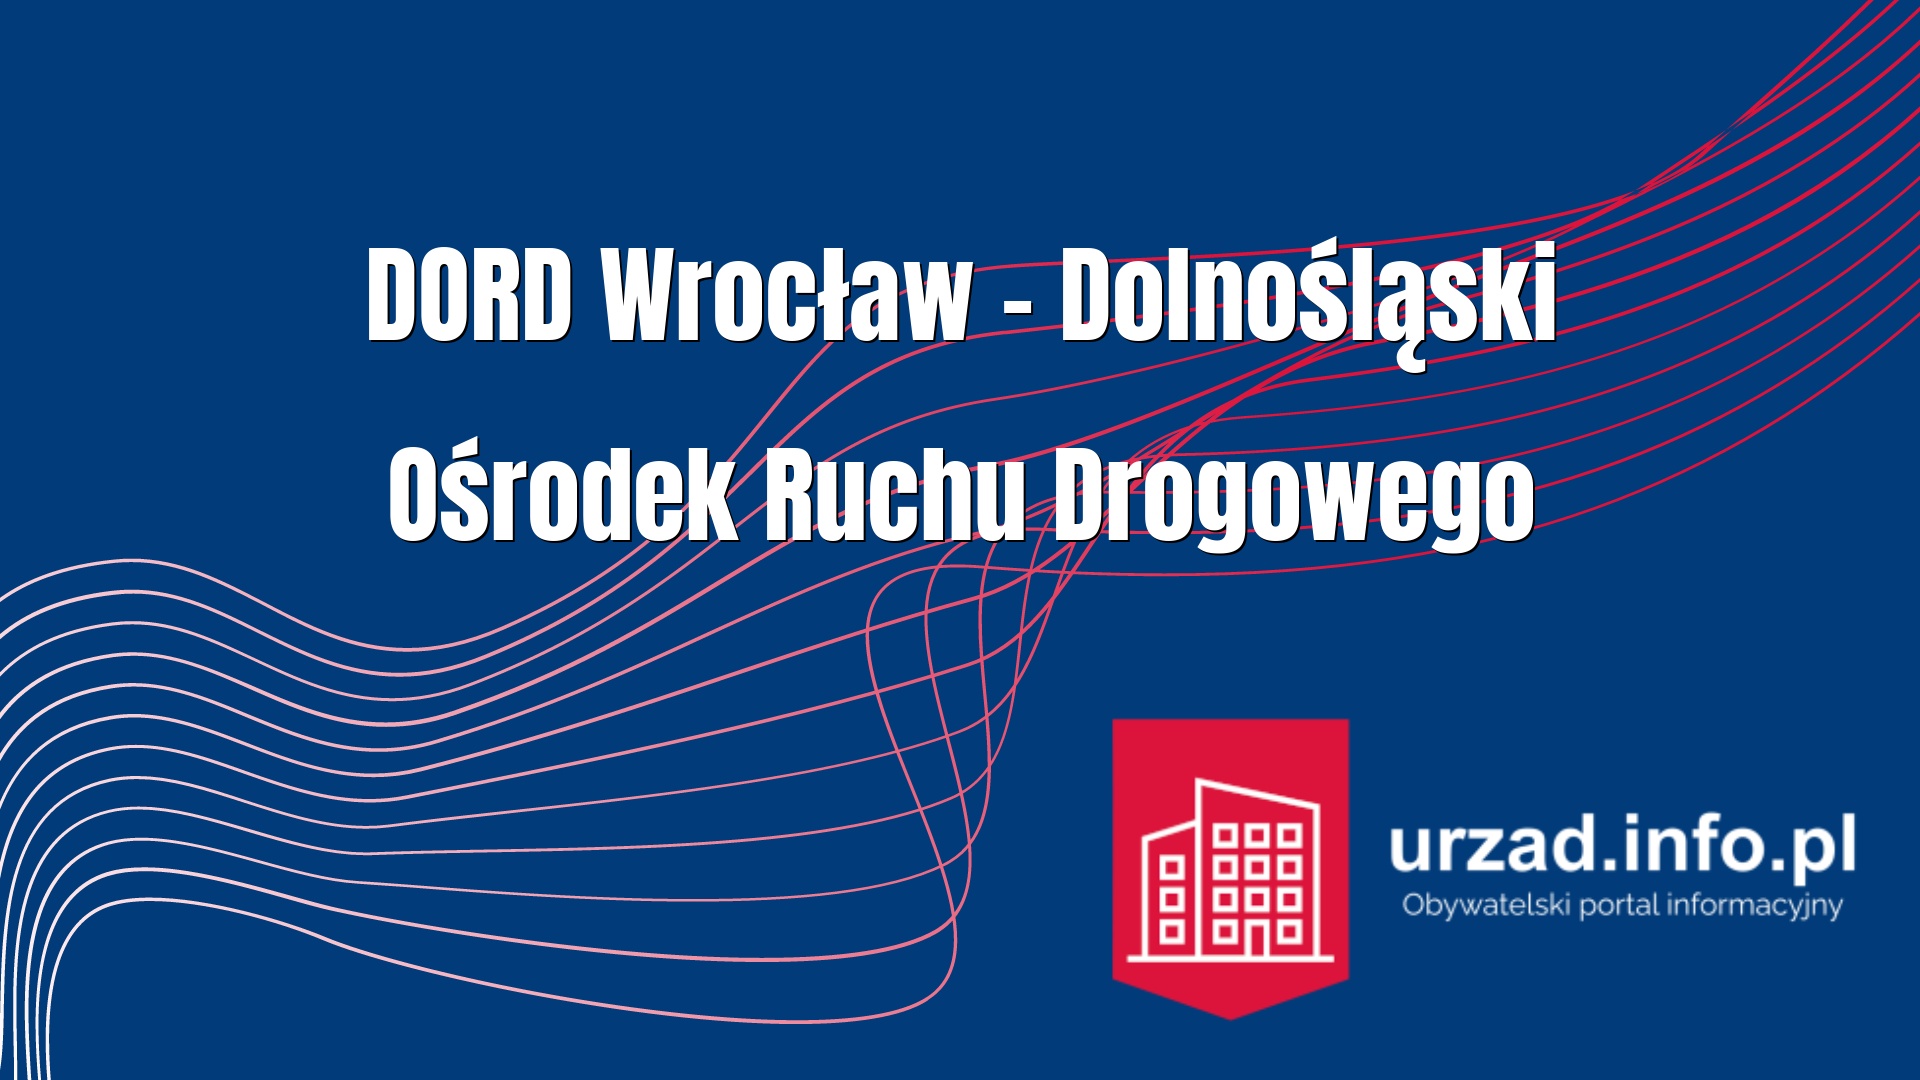 Dolnośląski Ośrodek Ruchu Drogowego we Wrocławiu